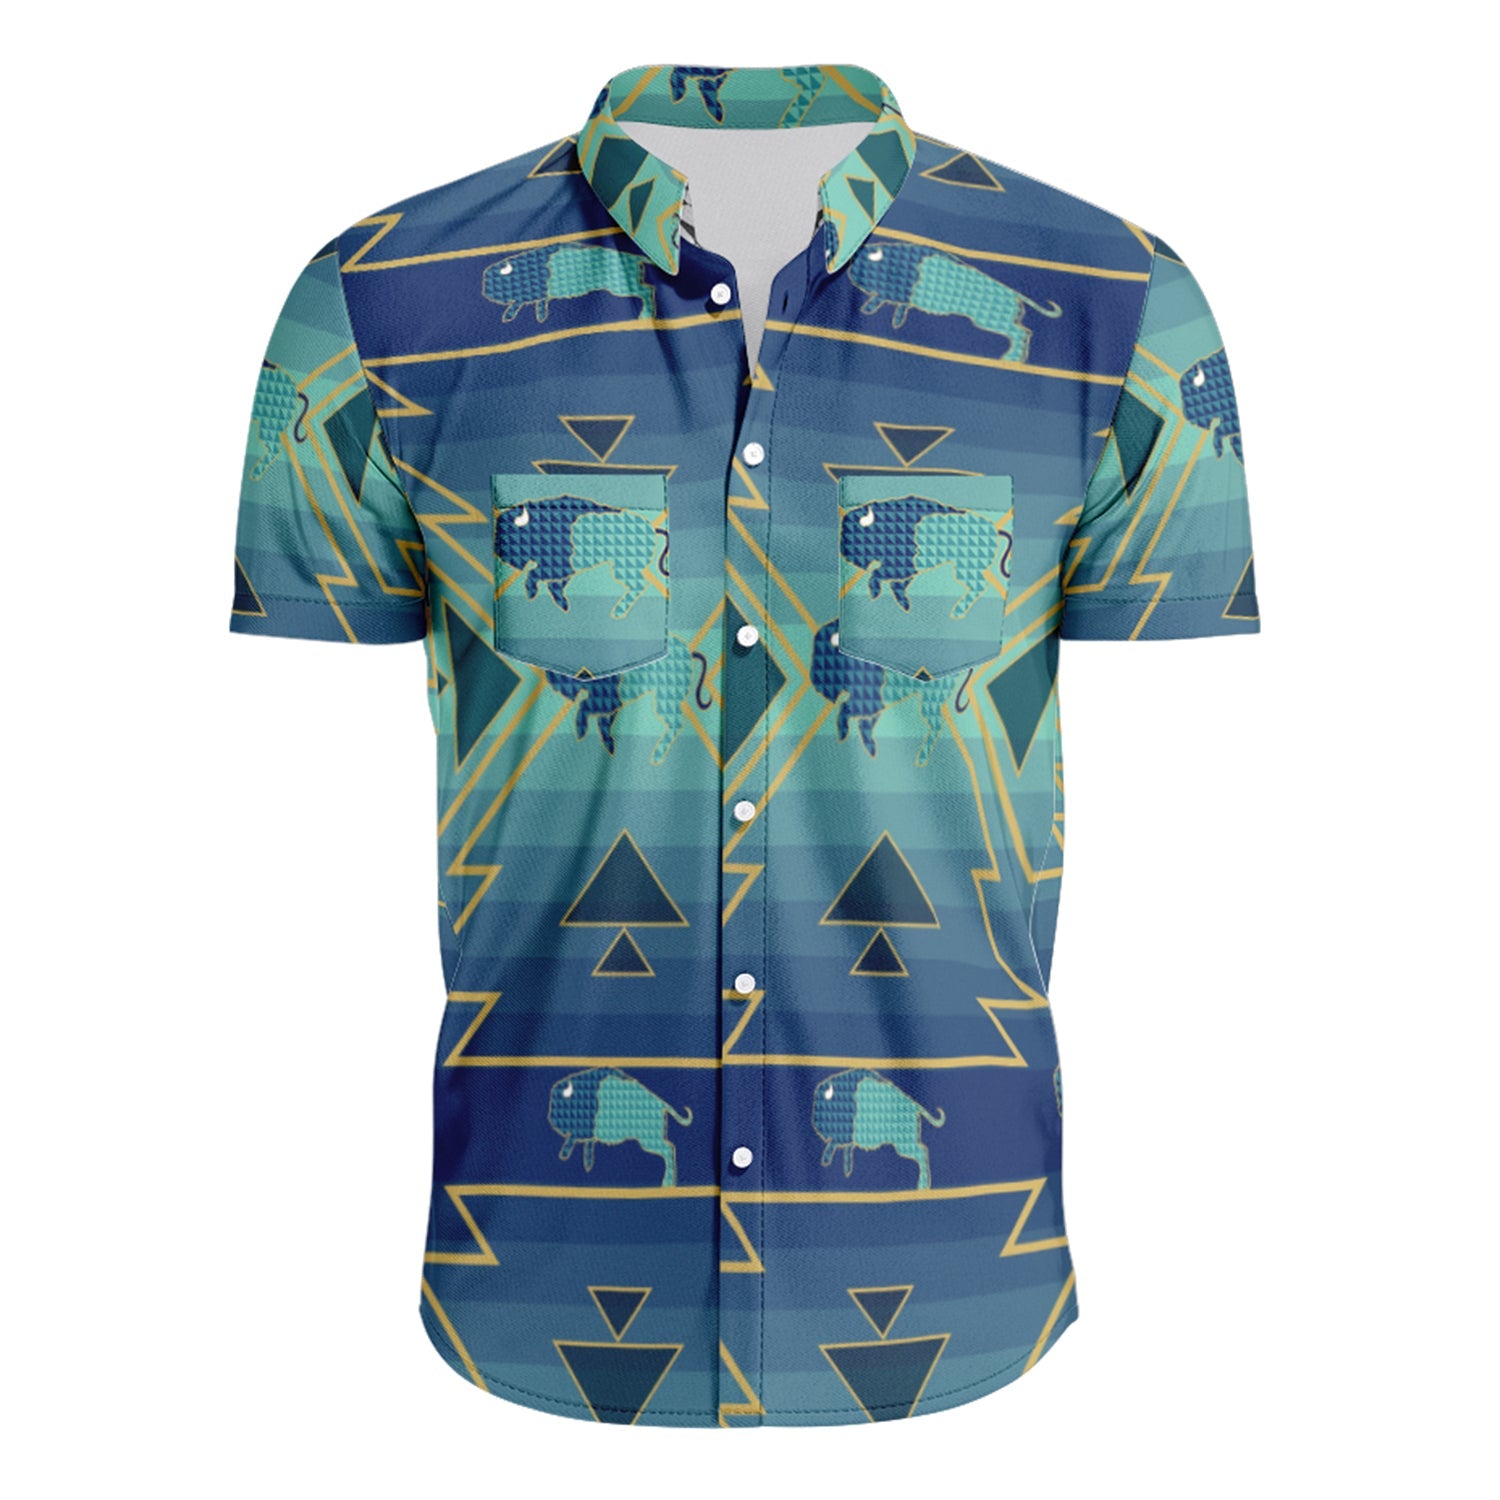 Buffalo Run Hawaiian-Style Button Up Shirt